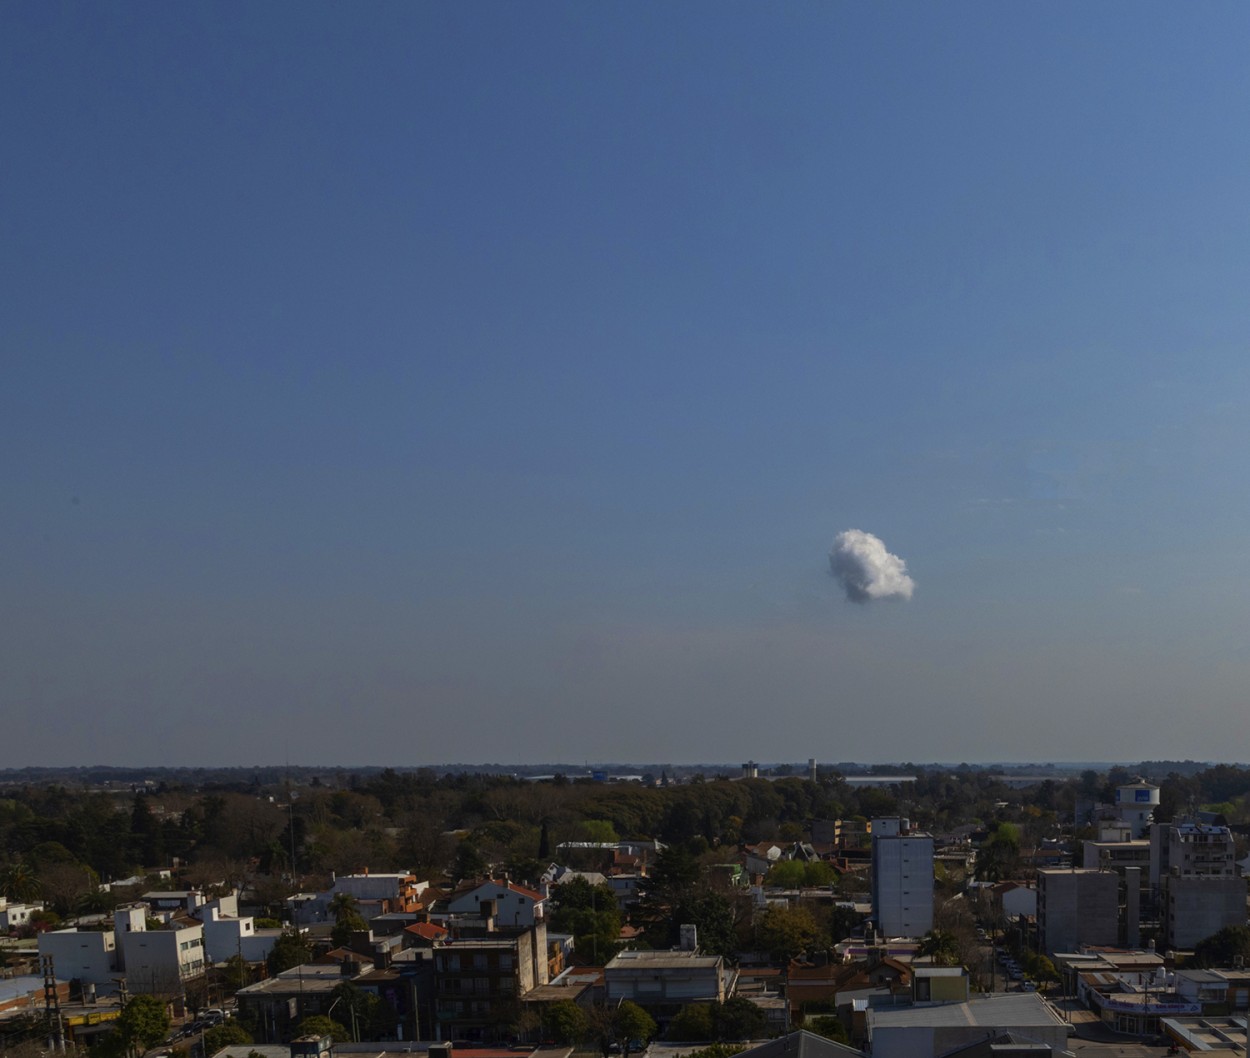 "Es una nube, no hay duda" de Alfredo Fushimi